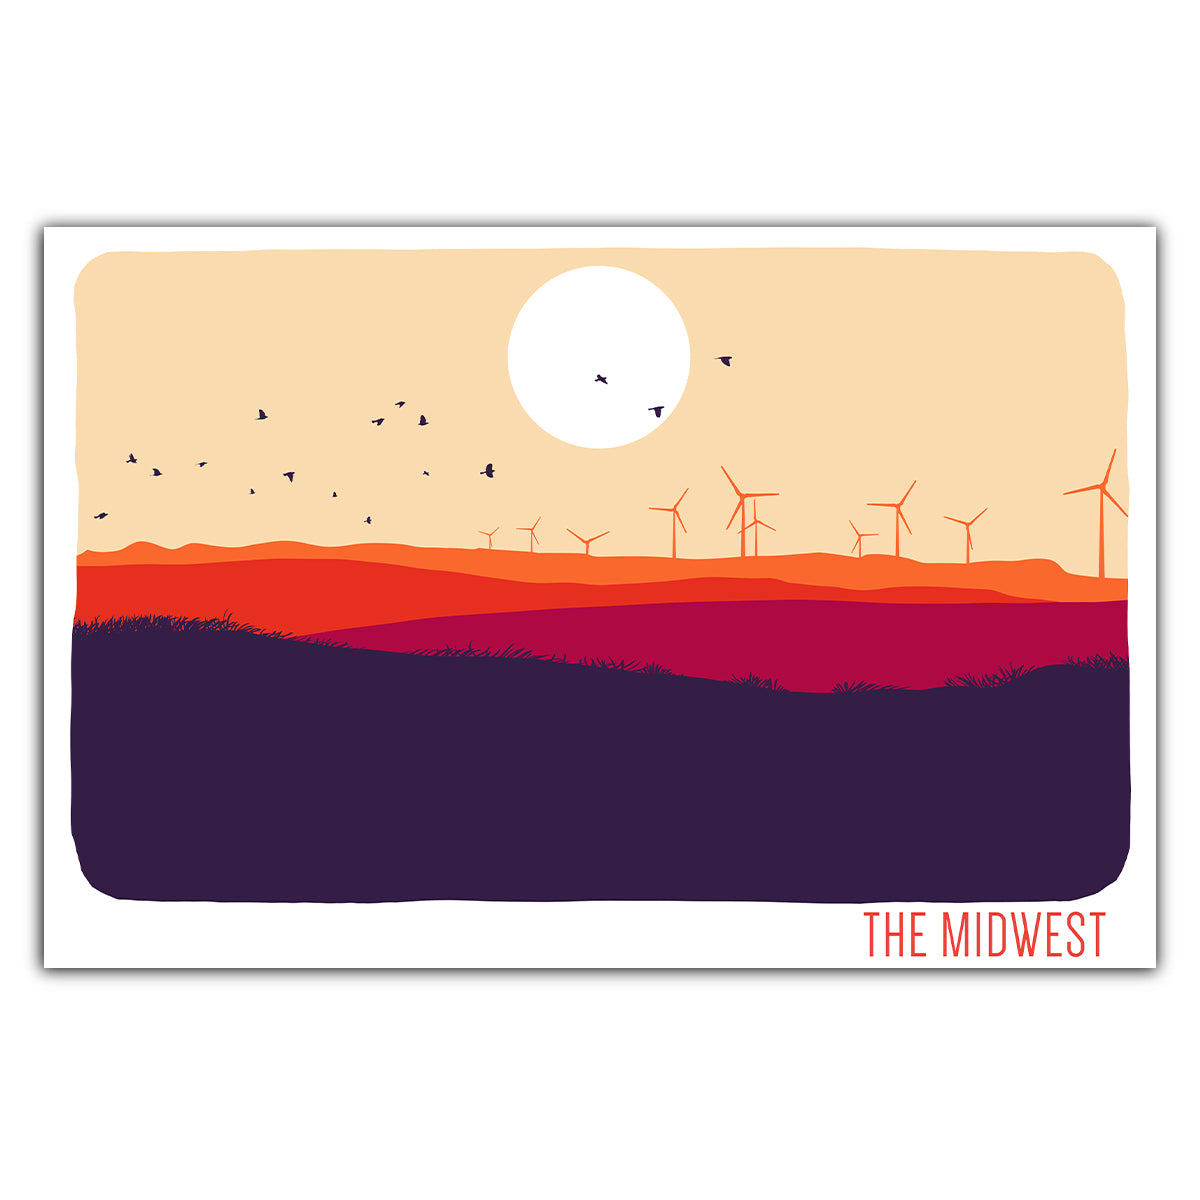 The Midwest Postcard - Bozz Prints